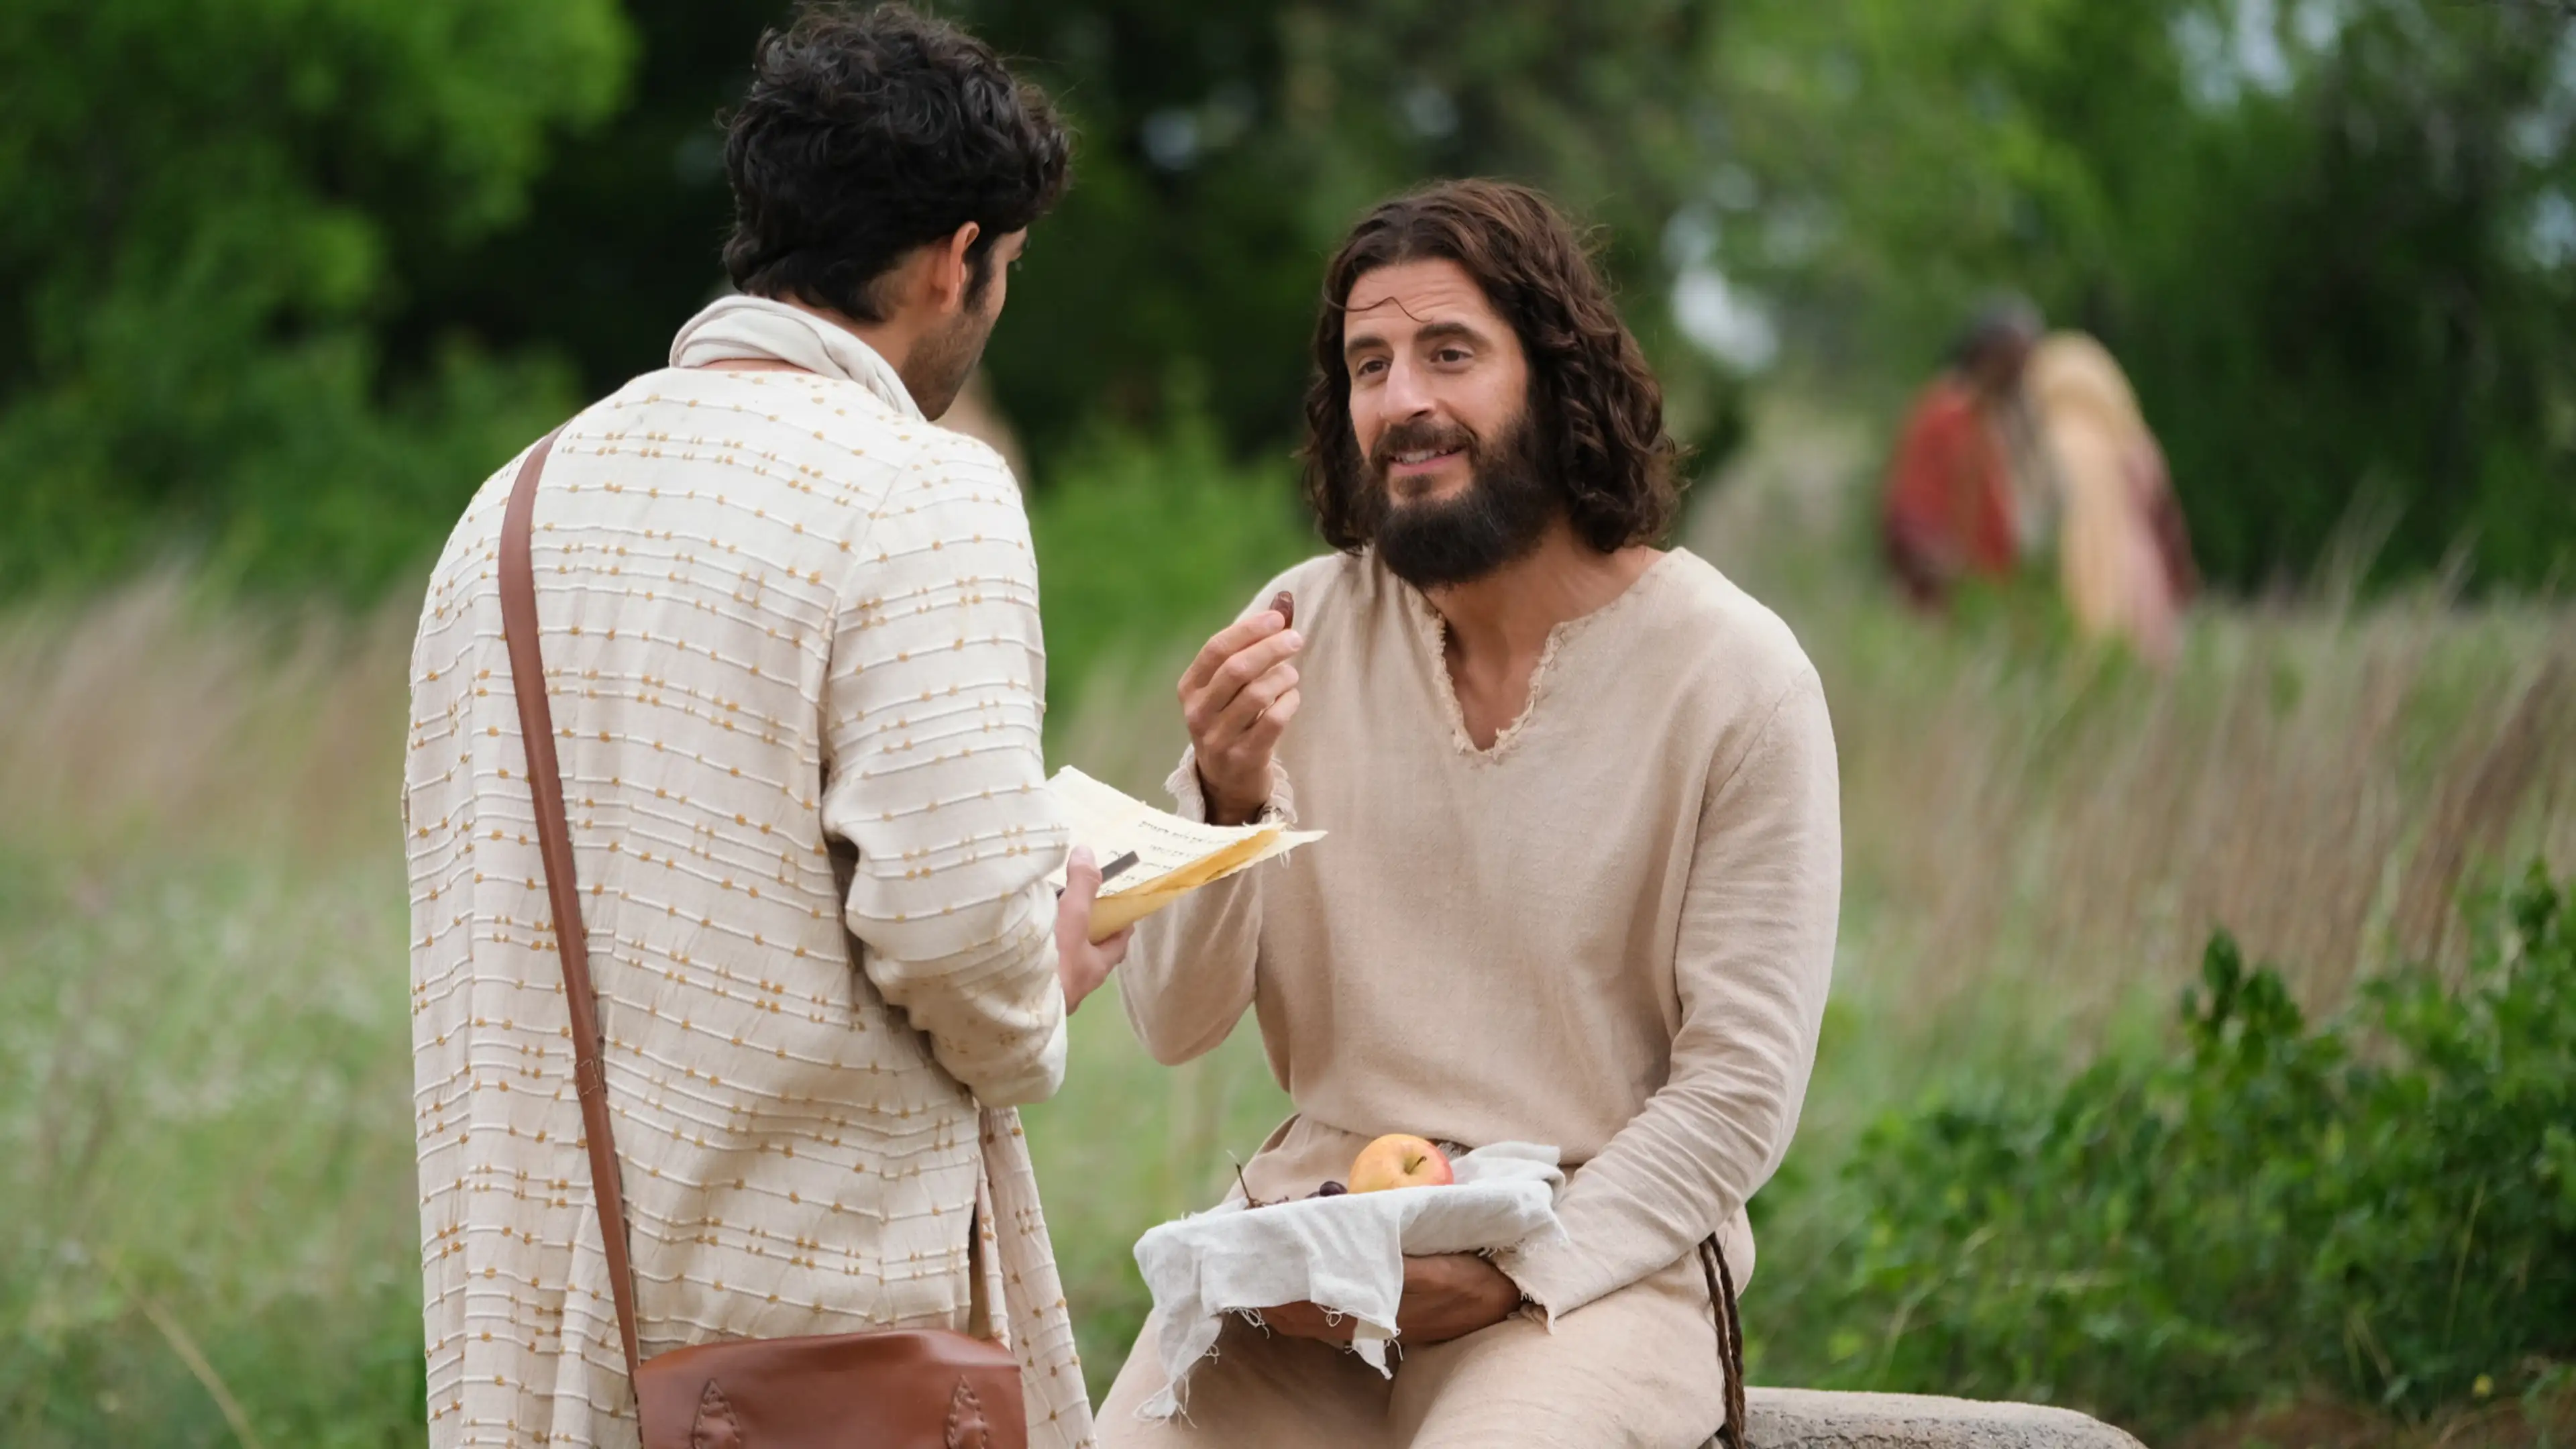 The Chosen 1x03 - Jesus & Aslan